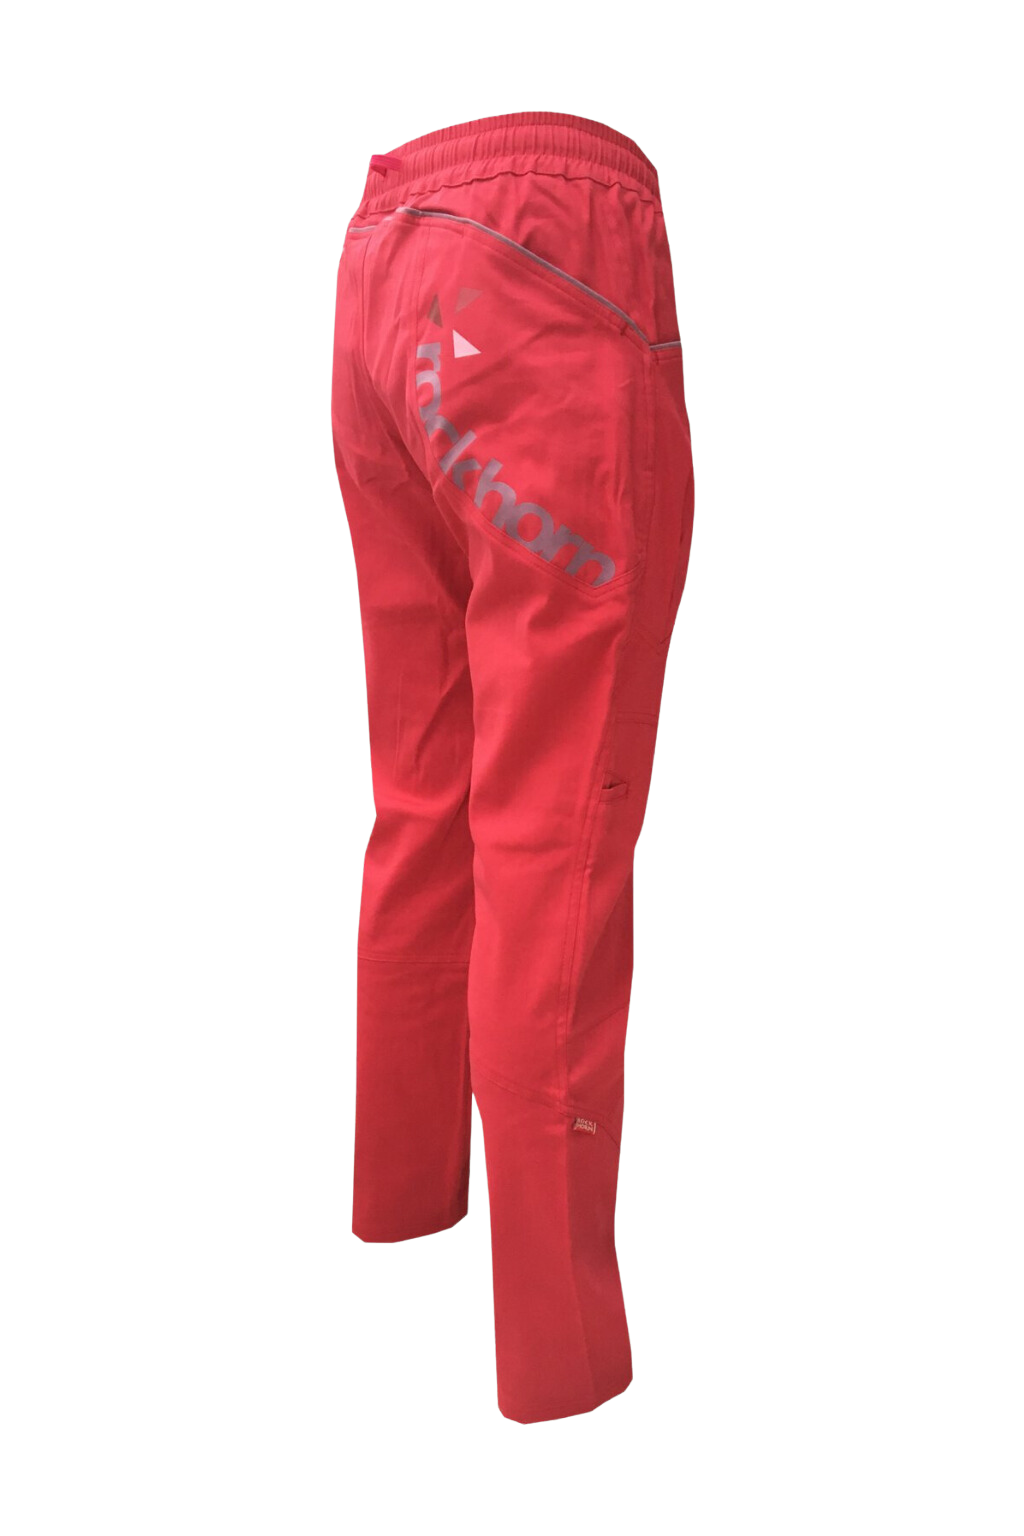 dámské kalhoty UNIVERSITY / růžové Velikost: XL